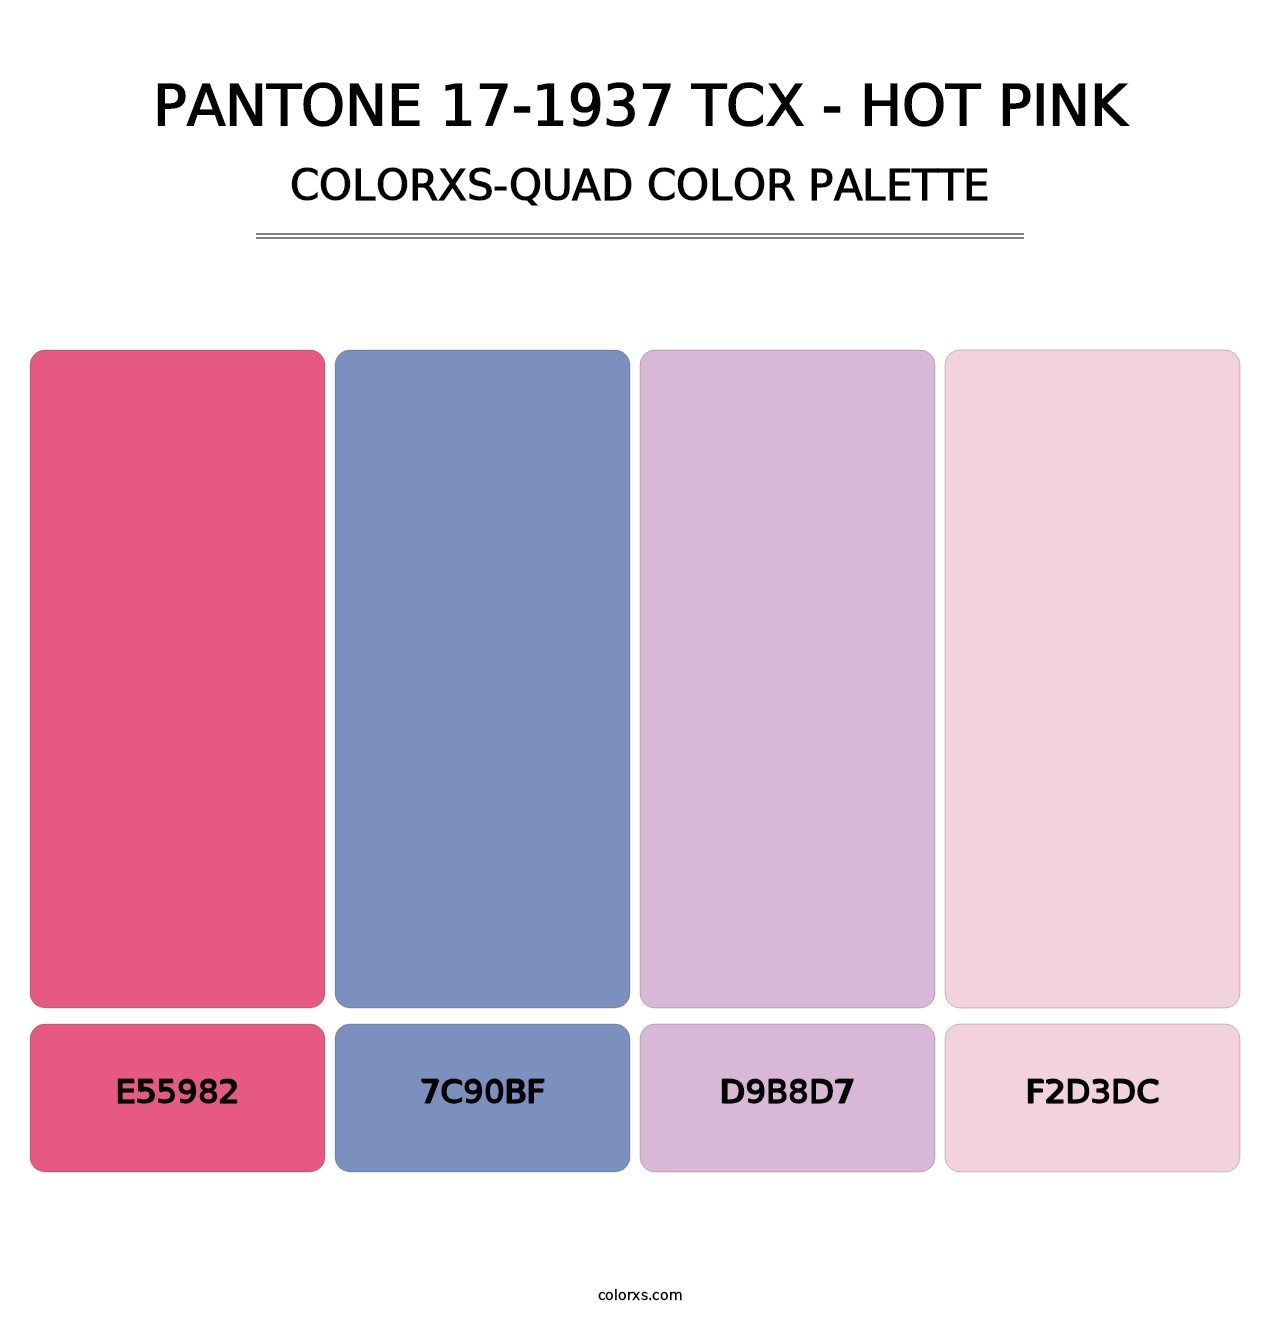 PANTONE 17-1937 TCX - Hot Pink - Colorxs Quad Palette